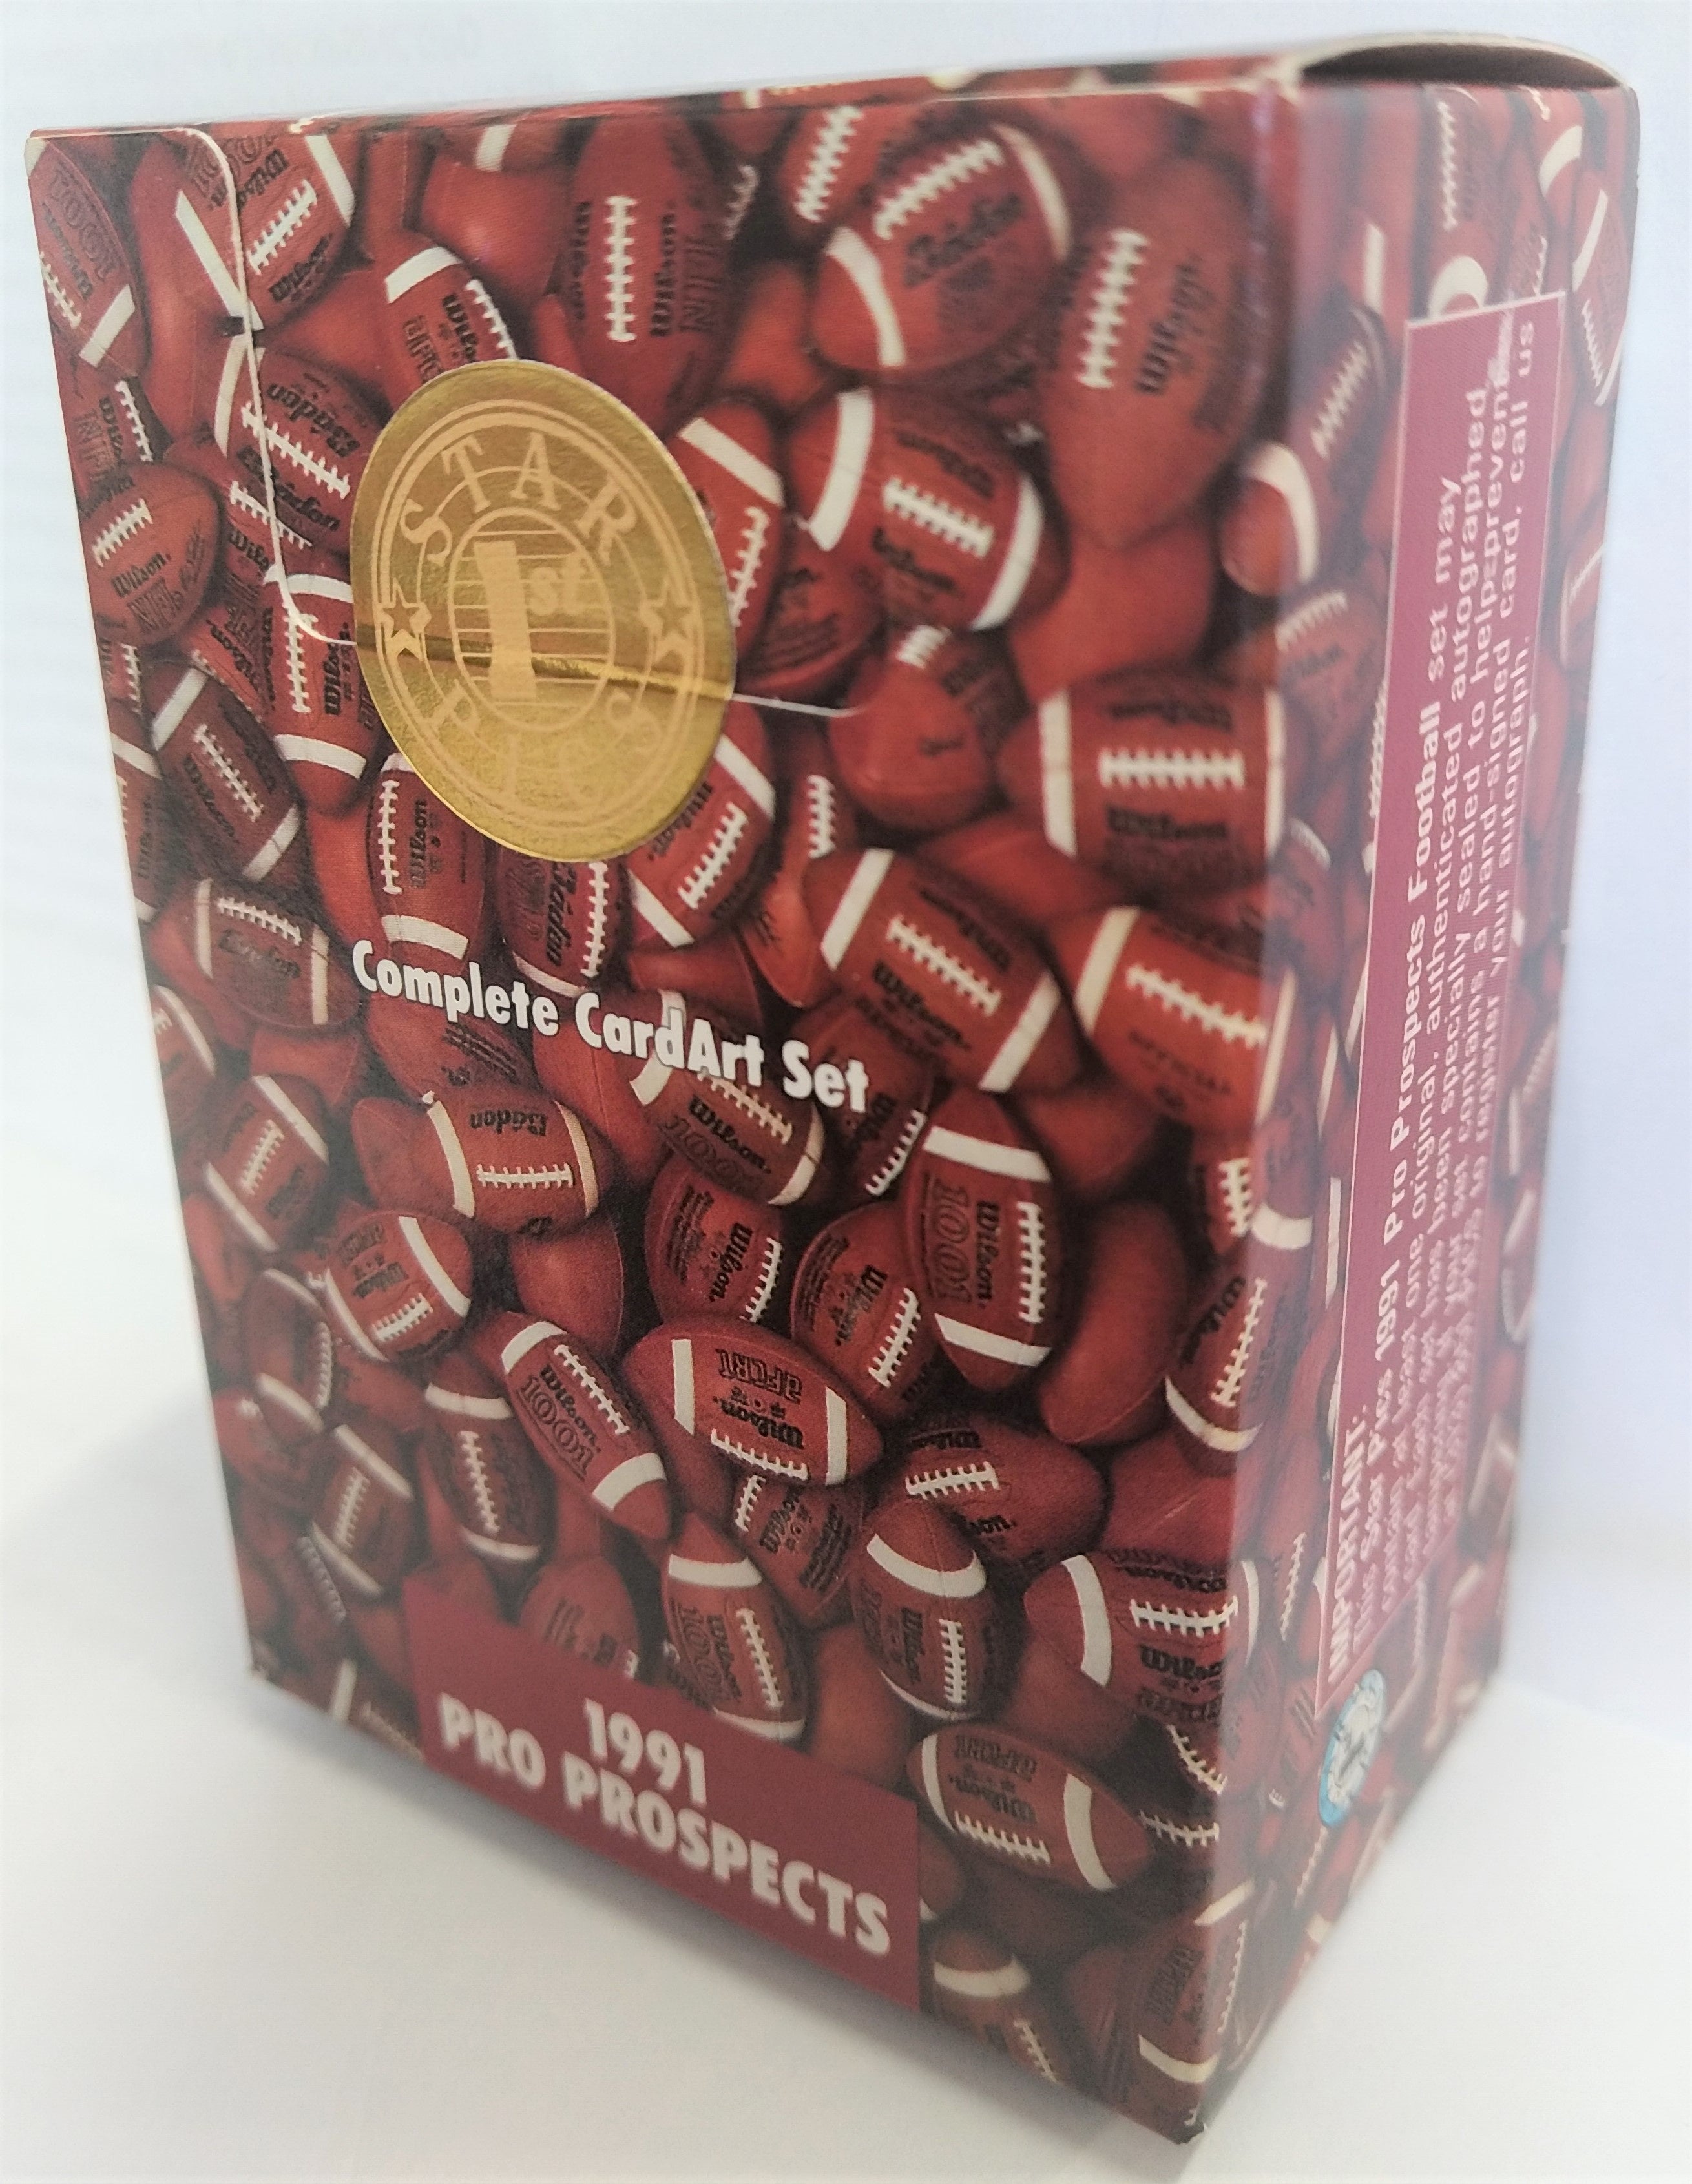 1991 Star Pics Pro Prospects NFL Football Box - BigBoi Cards